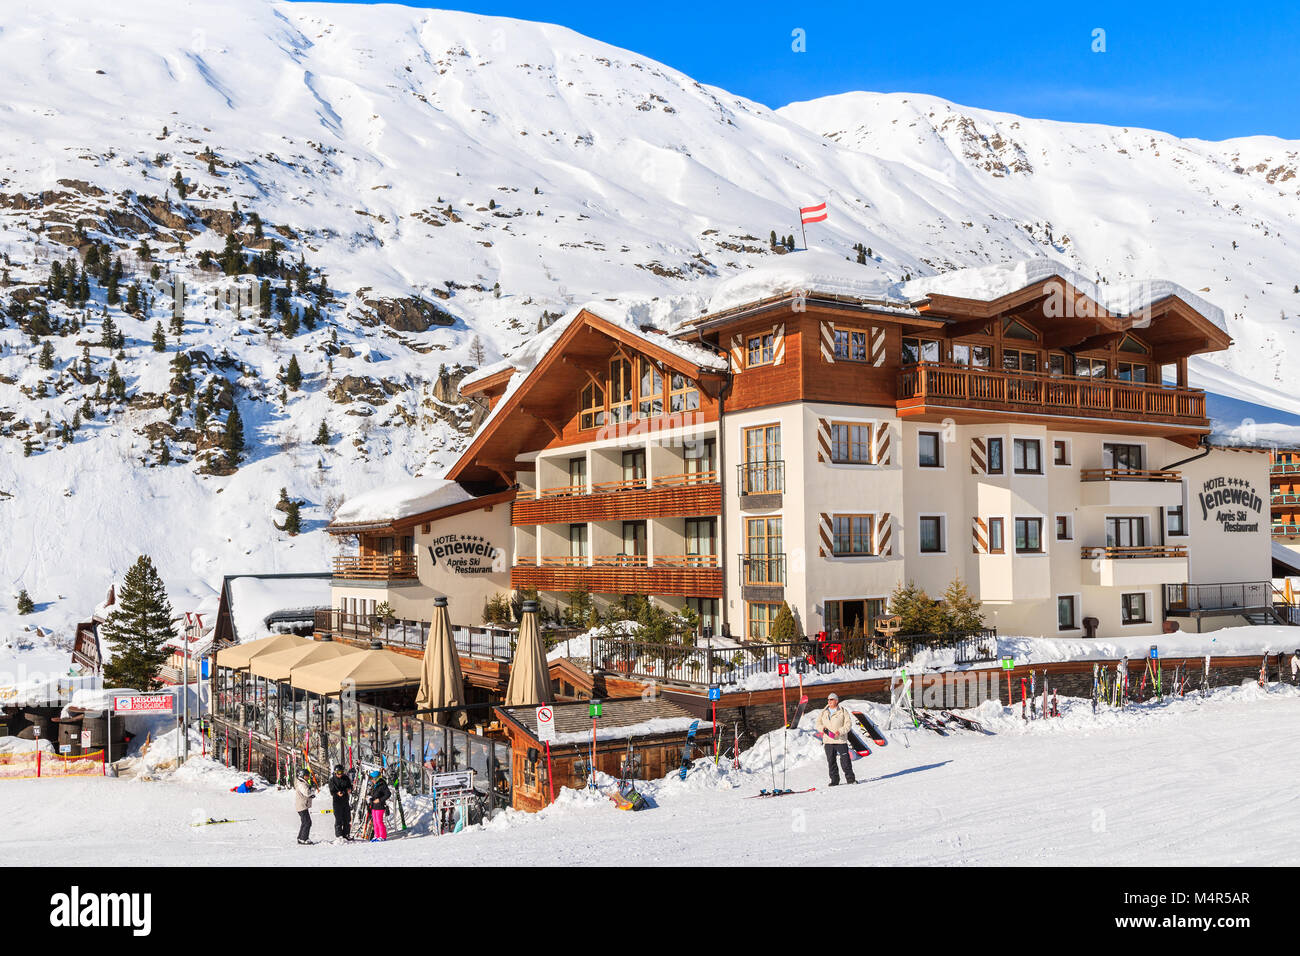 HOCHGURGL VILLAGE, AUSTRIA - Jan 30, 2018: pueblo de montaña con hoteles y casas en la bella zona de esquí de Hochgurgl-Obergurgl, Tirol, Austria. Foto de stock